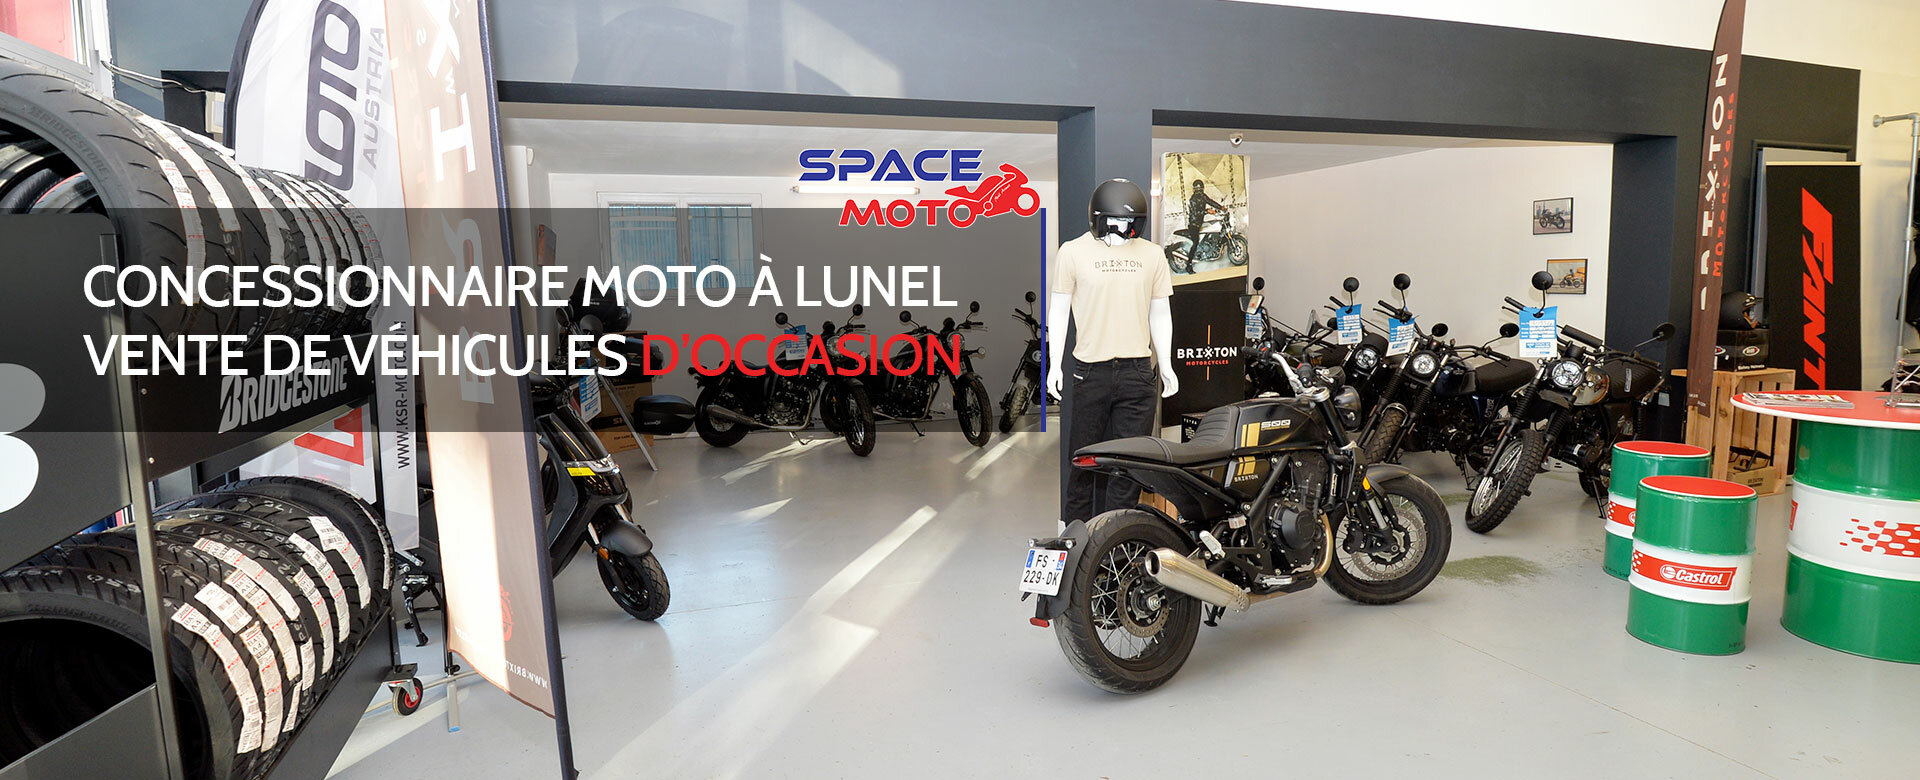 SPACE MOTO - Concessionnaire moto - Secteurs Montpellier, Lunel et Lunel-Viel